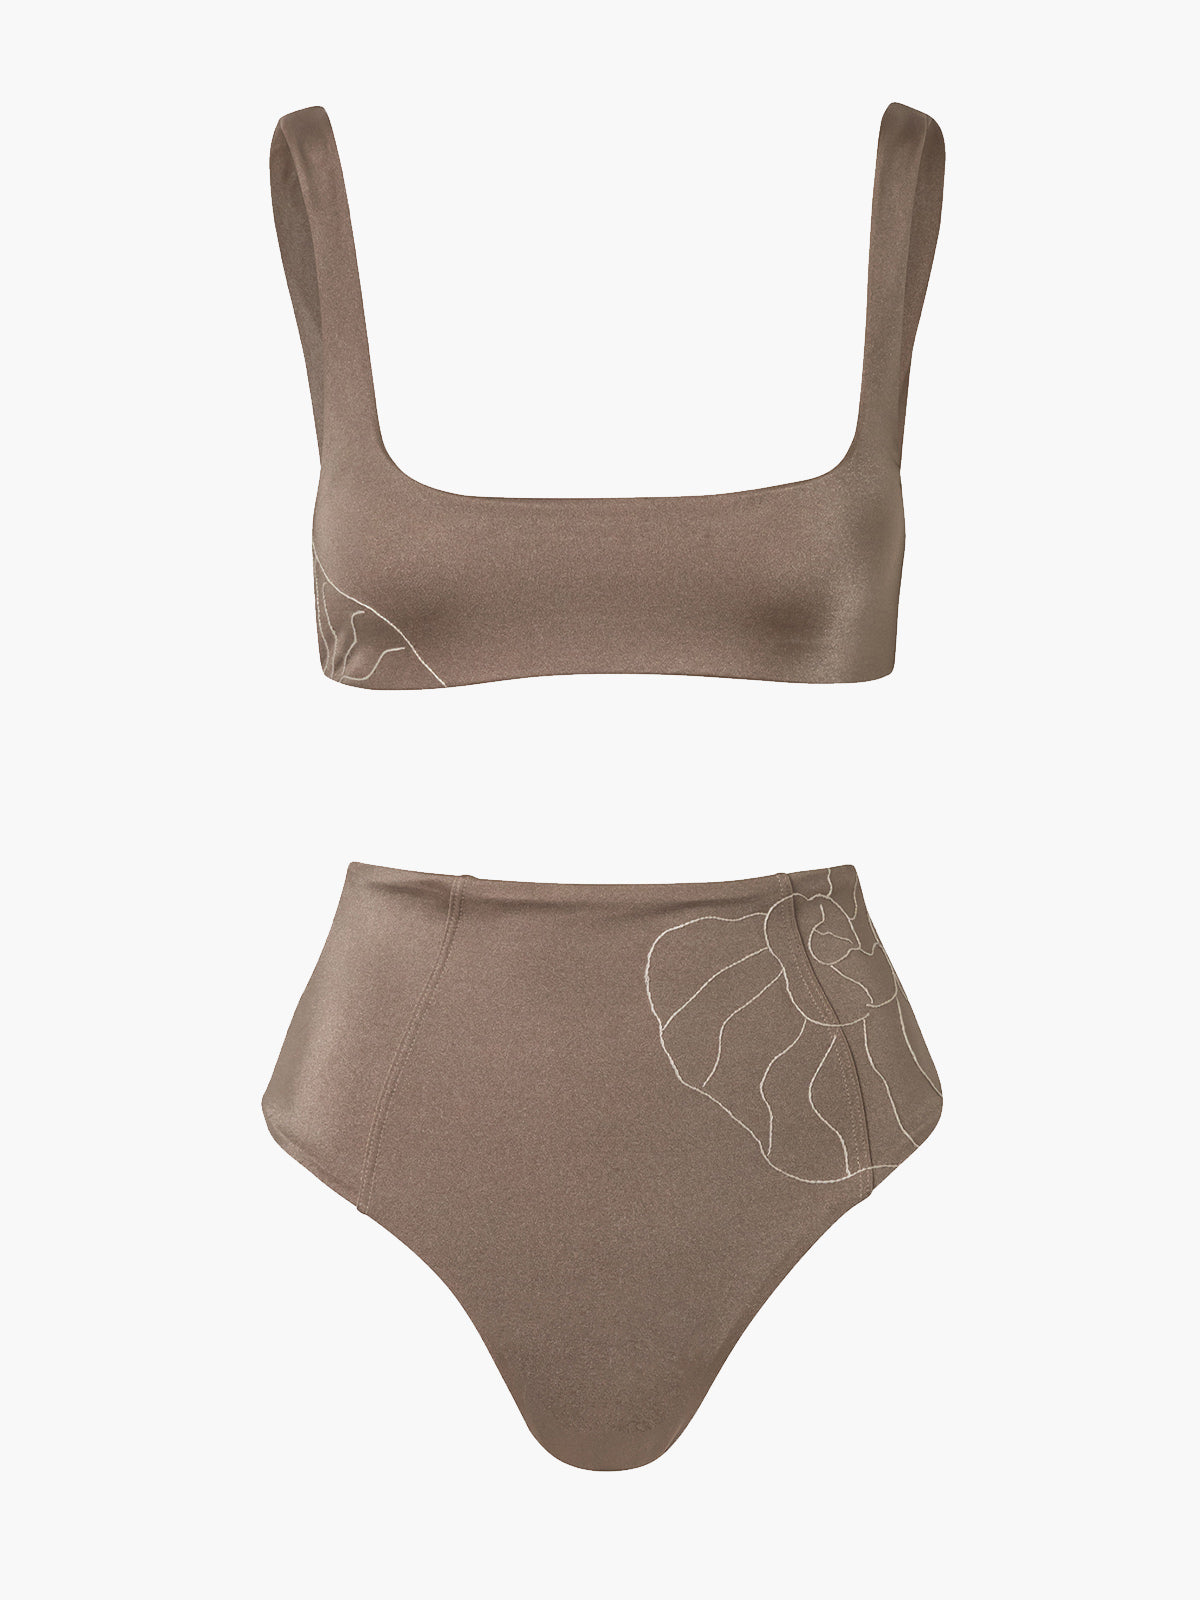 Embroidered Castiglioncello Bikini Set | Toffee